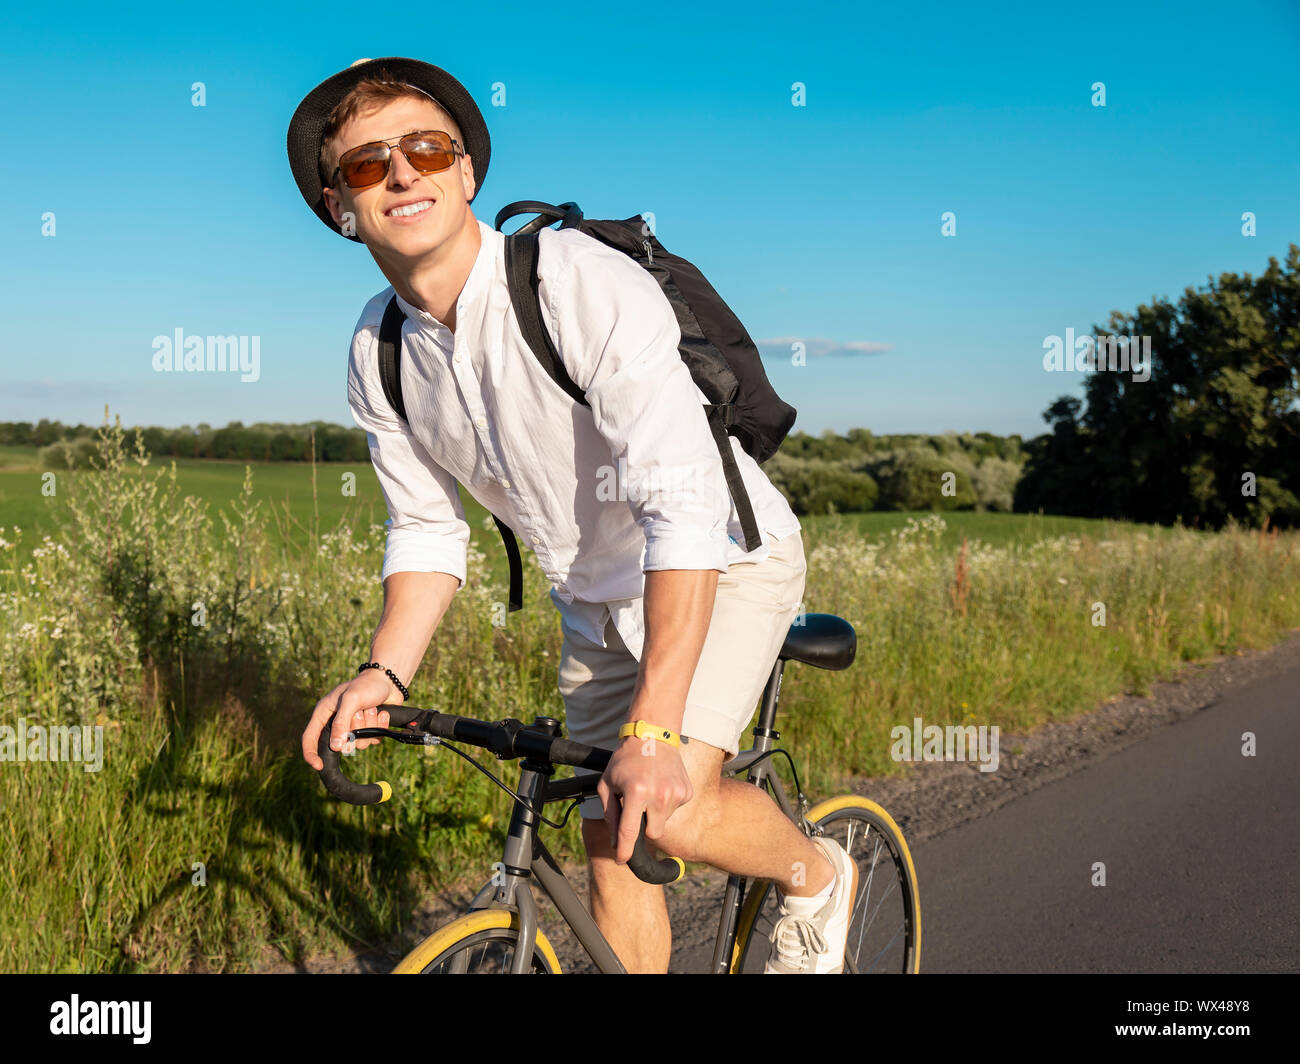 Junge Mann in Weiß genießt mit dem Fahrrad durch die Landschaft Stockfoto